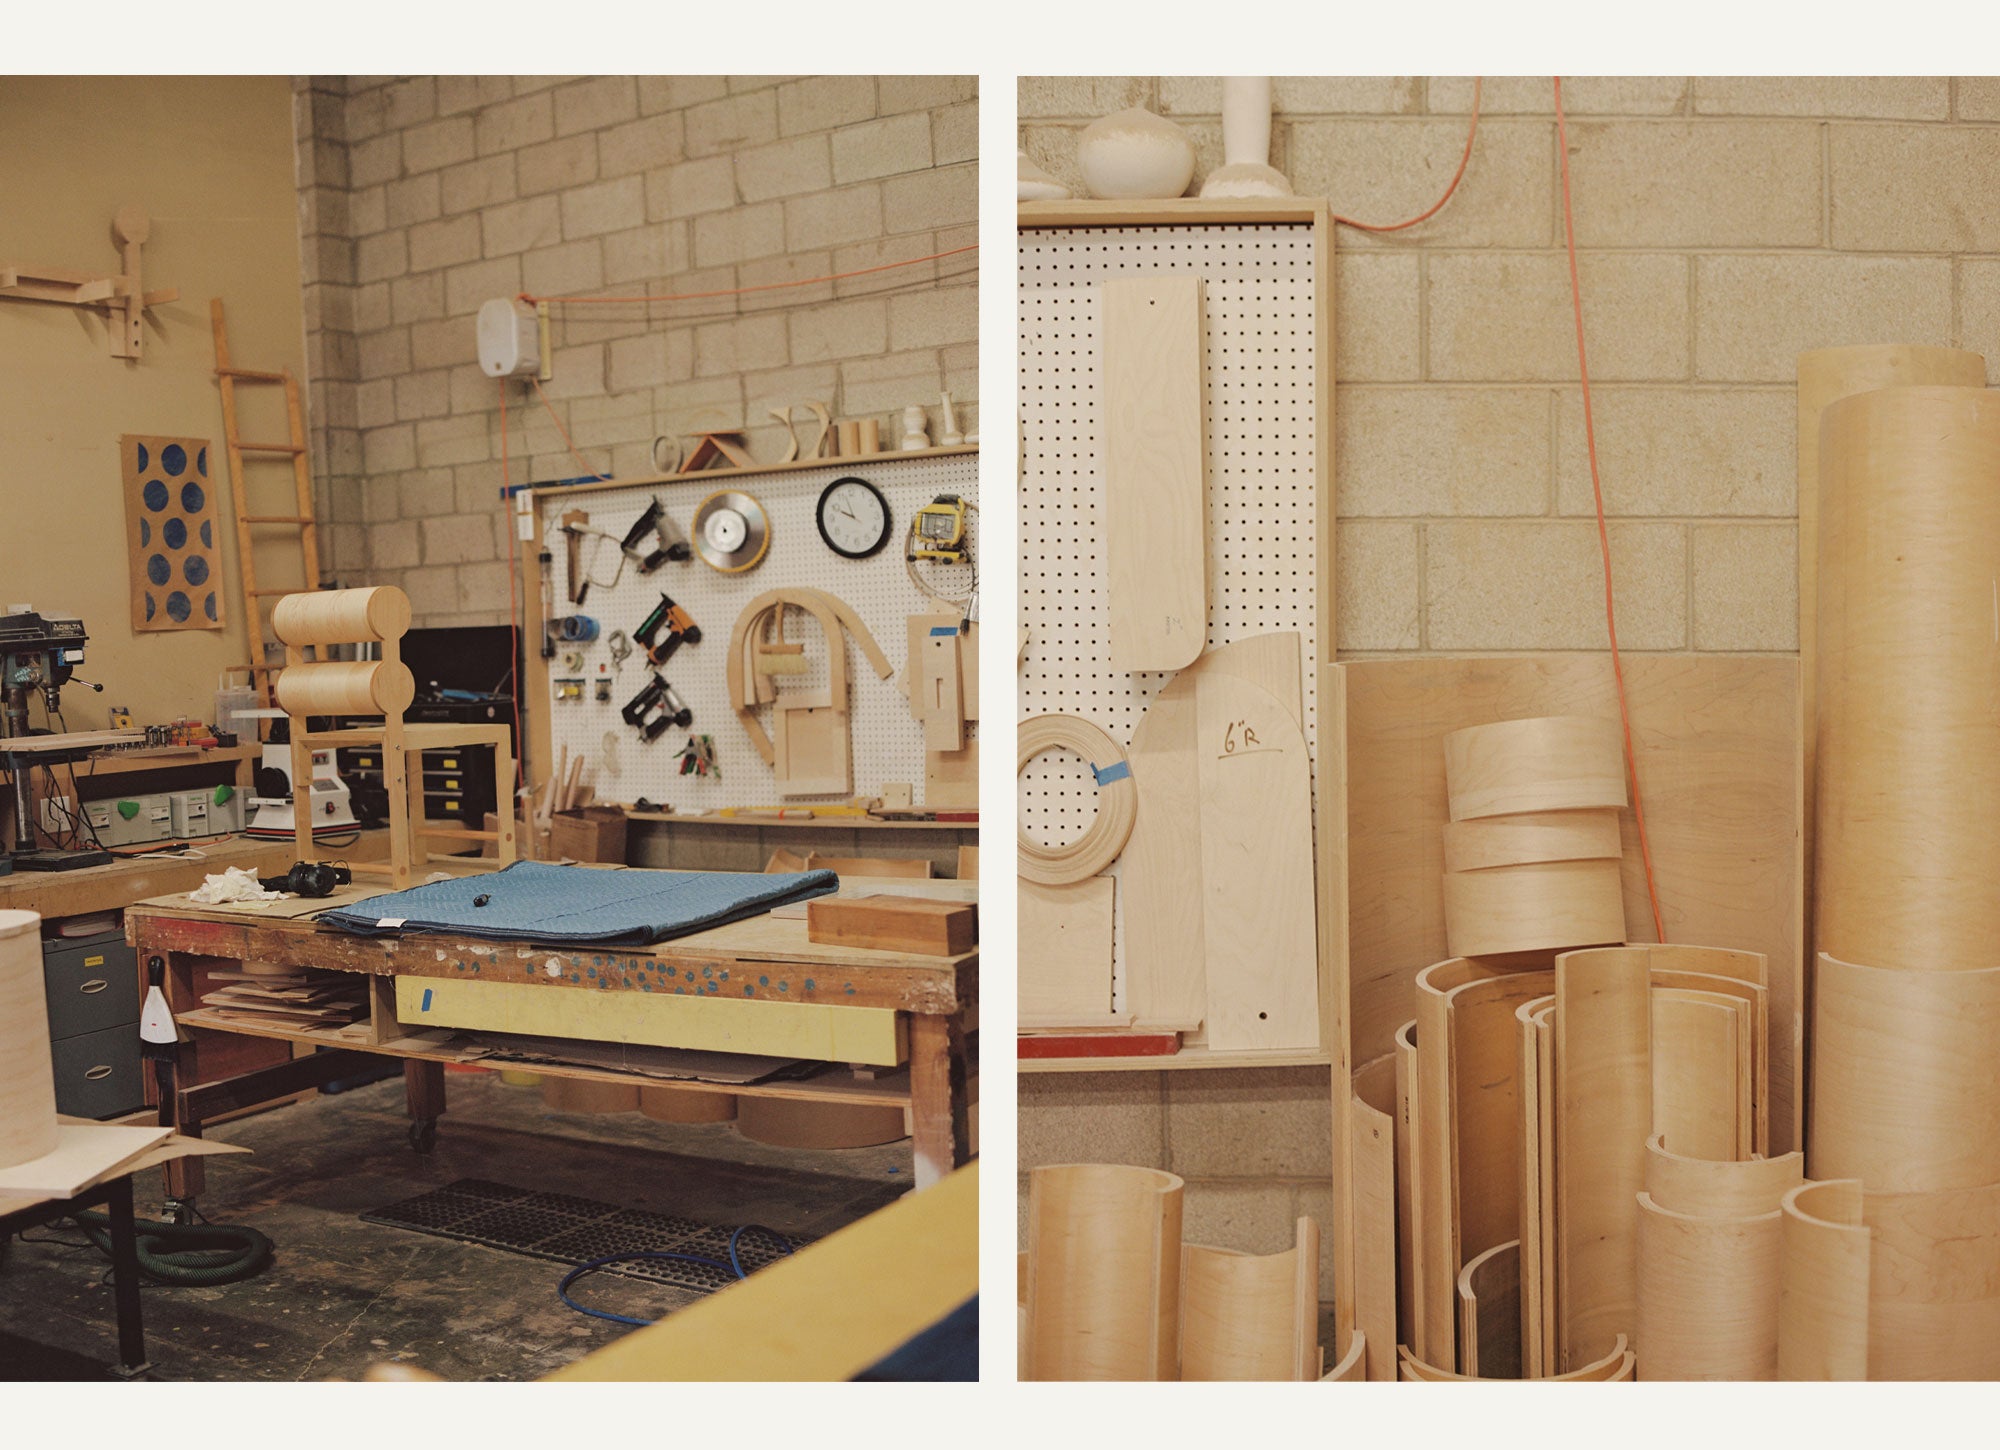 Furniture and building supplies at the Waka Waka studio in LA